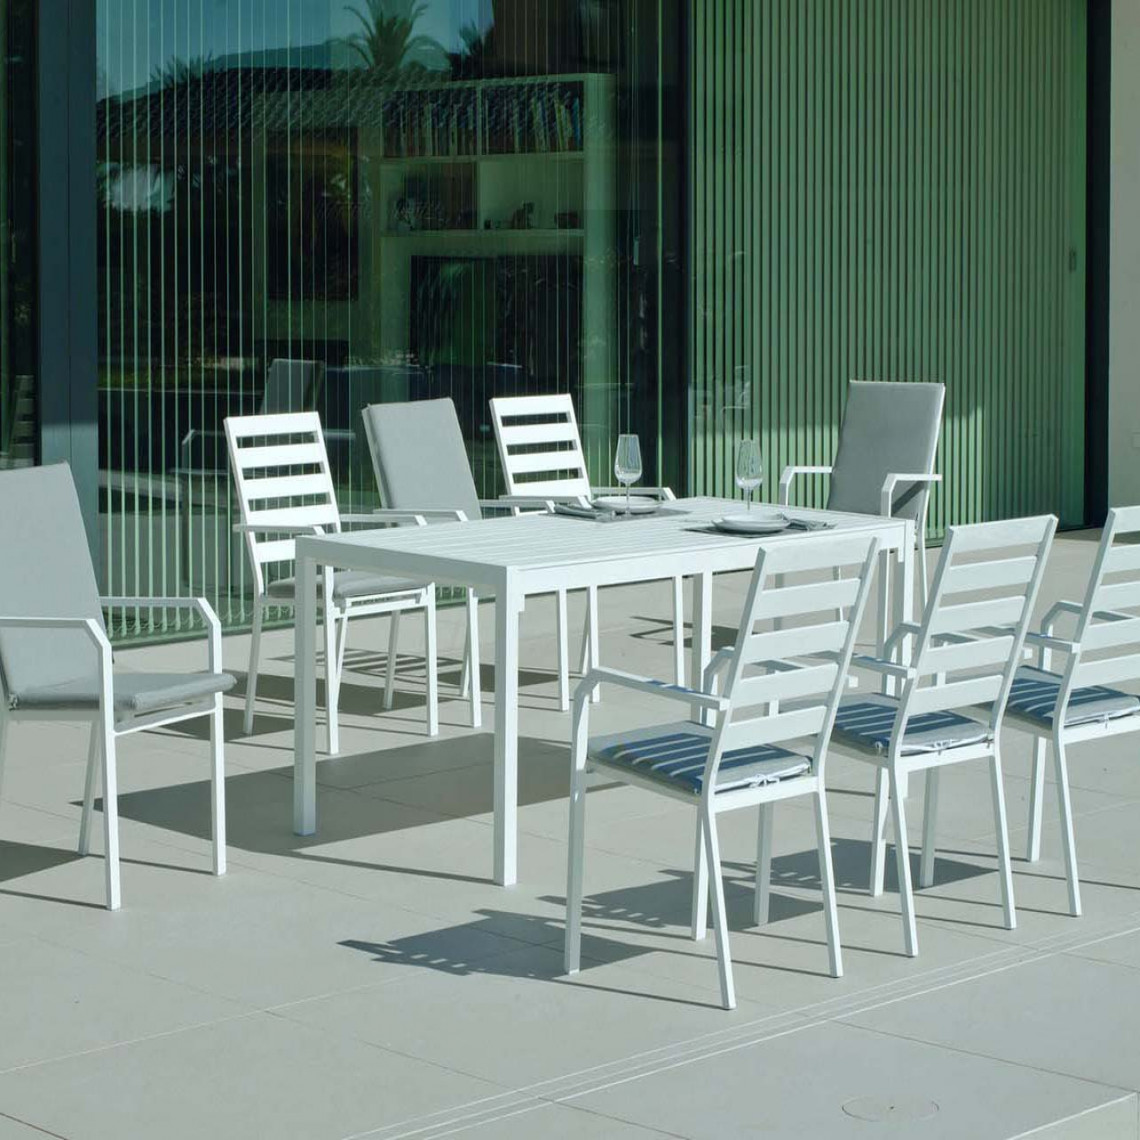 Hevea - Salon de jardin en aluminium 8 personnes Palma caravel - Ensembles tables et chaises